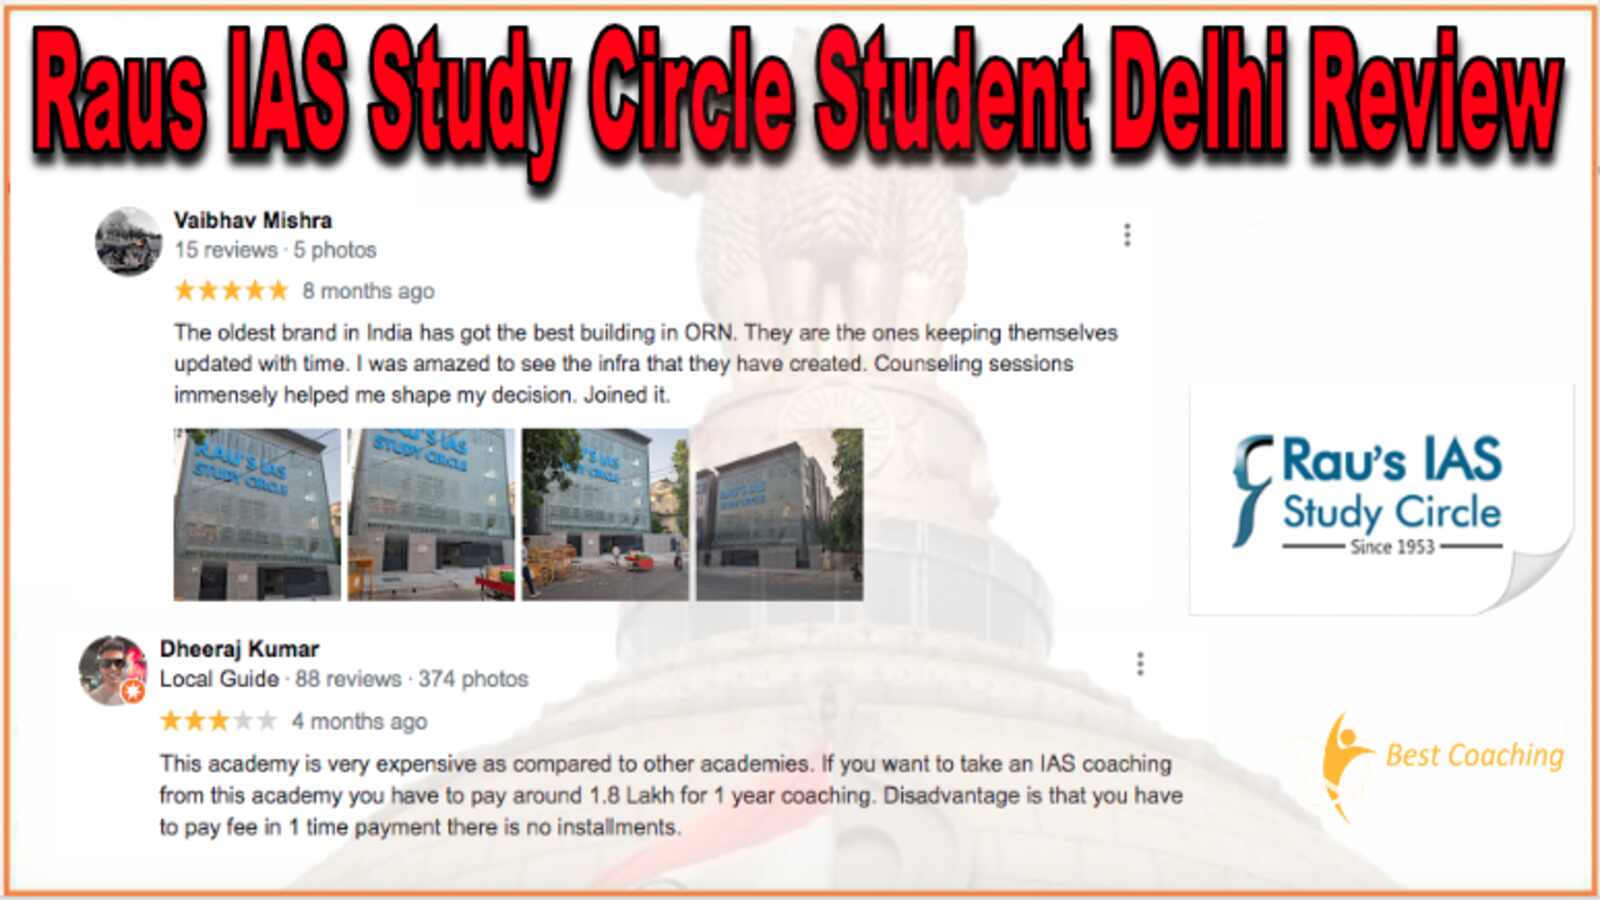 Raus IAS Study Circle Student Delhi Reviews